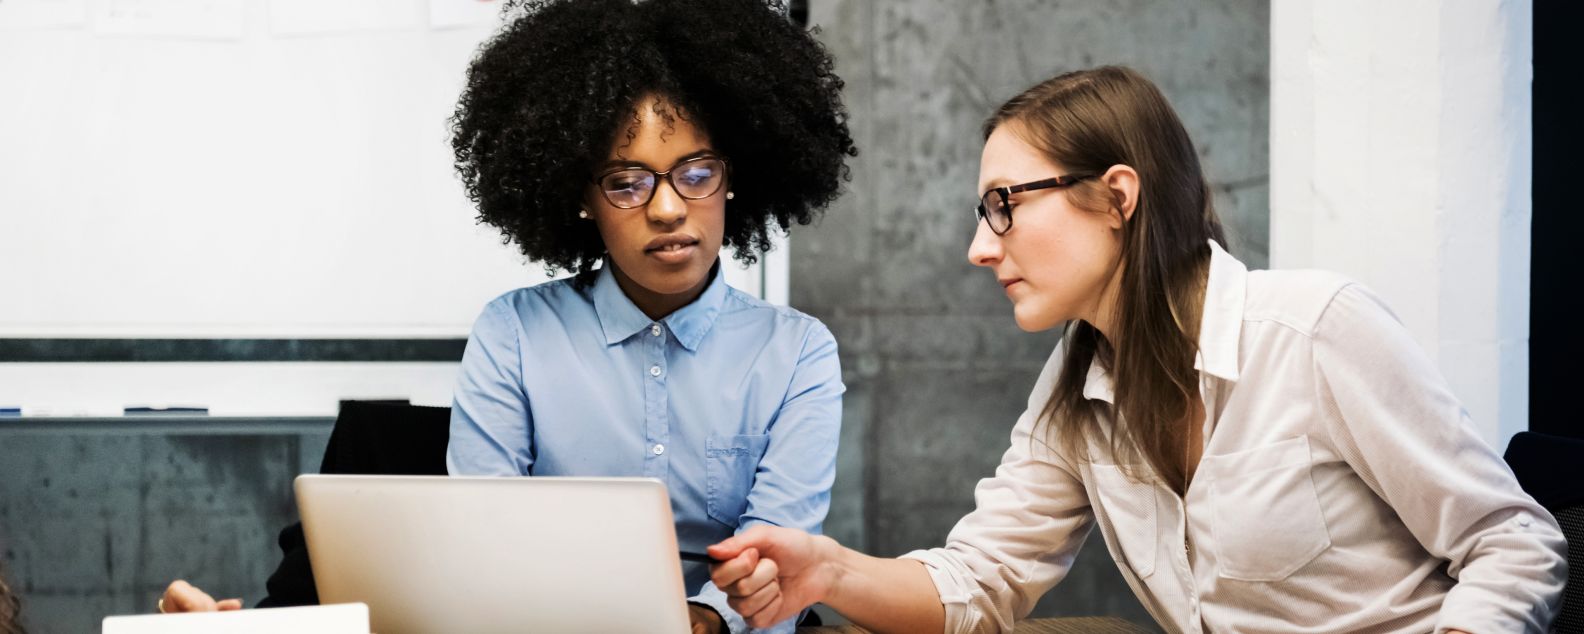 黒人と白人の若い女性2人が現代的なオフィスでビジネス・ミーティングをしています。2人は書類とノートPCを使って話し合っており、そのうちの1人がコンピューターの画面を指差しています。2人とも眼鏡をかけており、背景には円グラフが見えます。